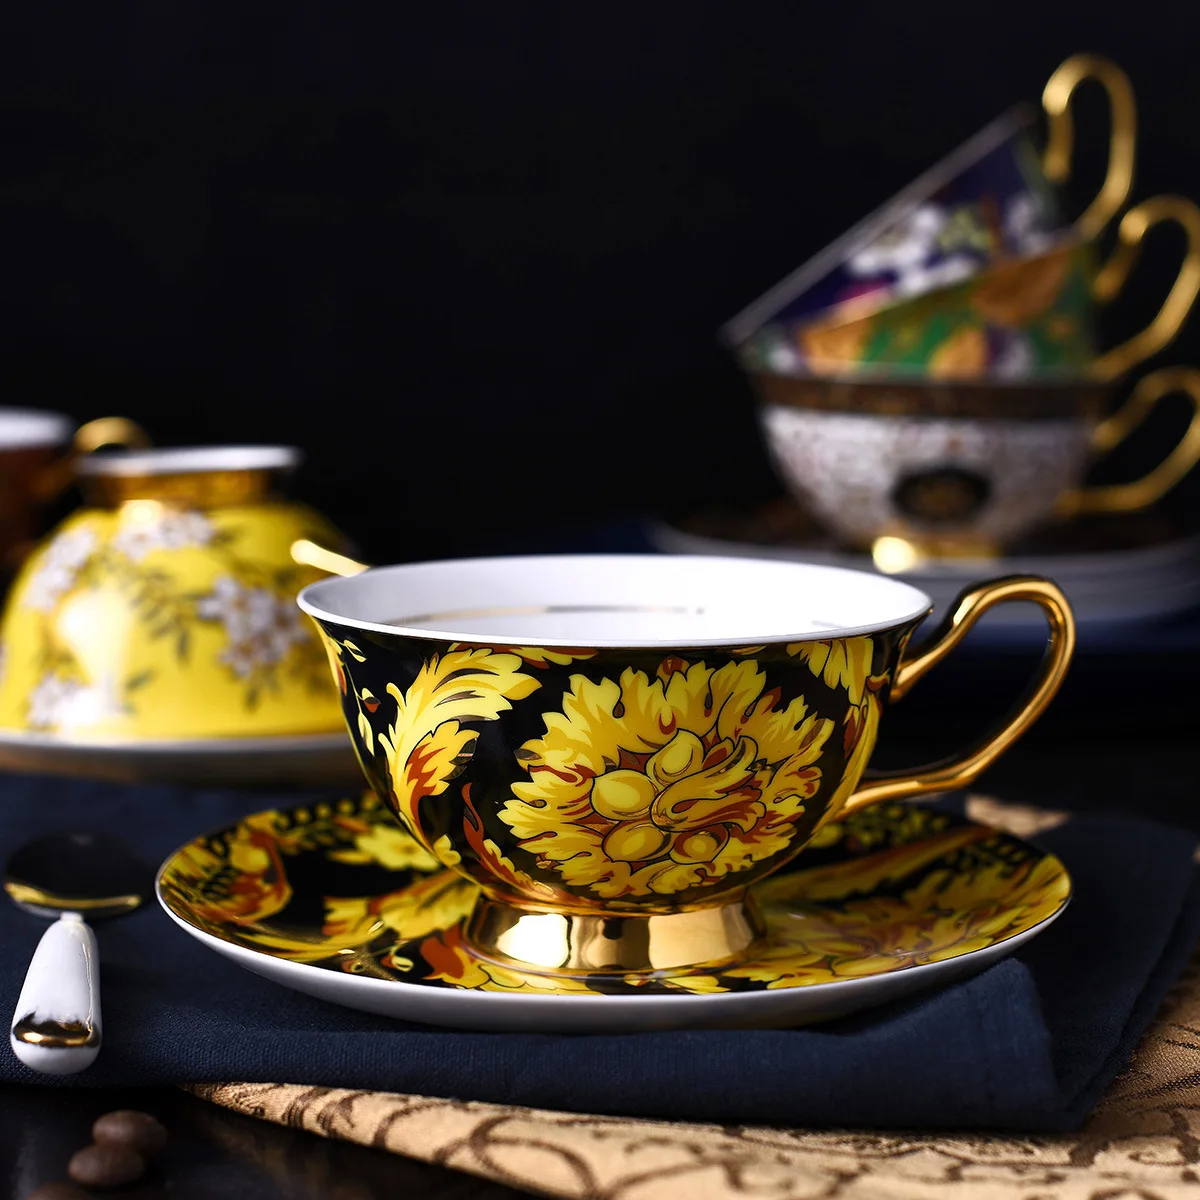 

Кофейная чашка из костяного фарфора, набор в европейском стиле для дома, офиса, послеобеденного чая, креативные керамические подарки